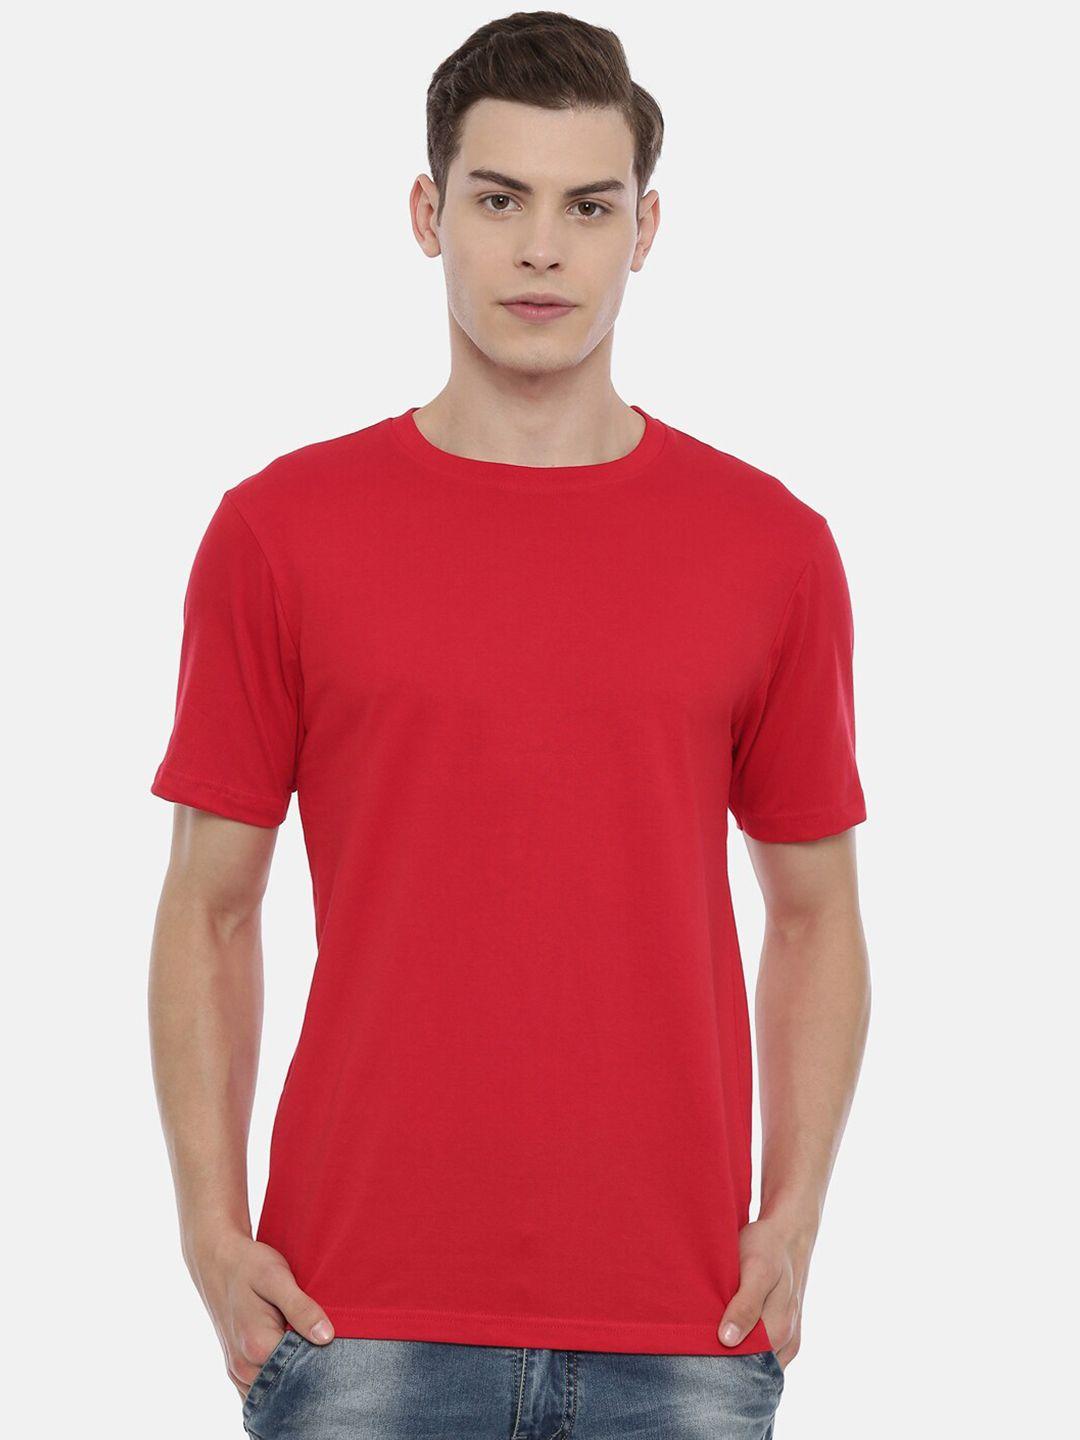 recast-men-red-pure-cotton-t-shirt